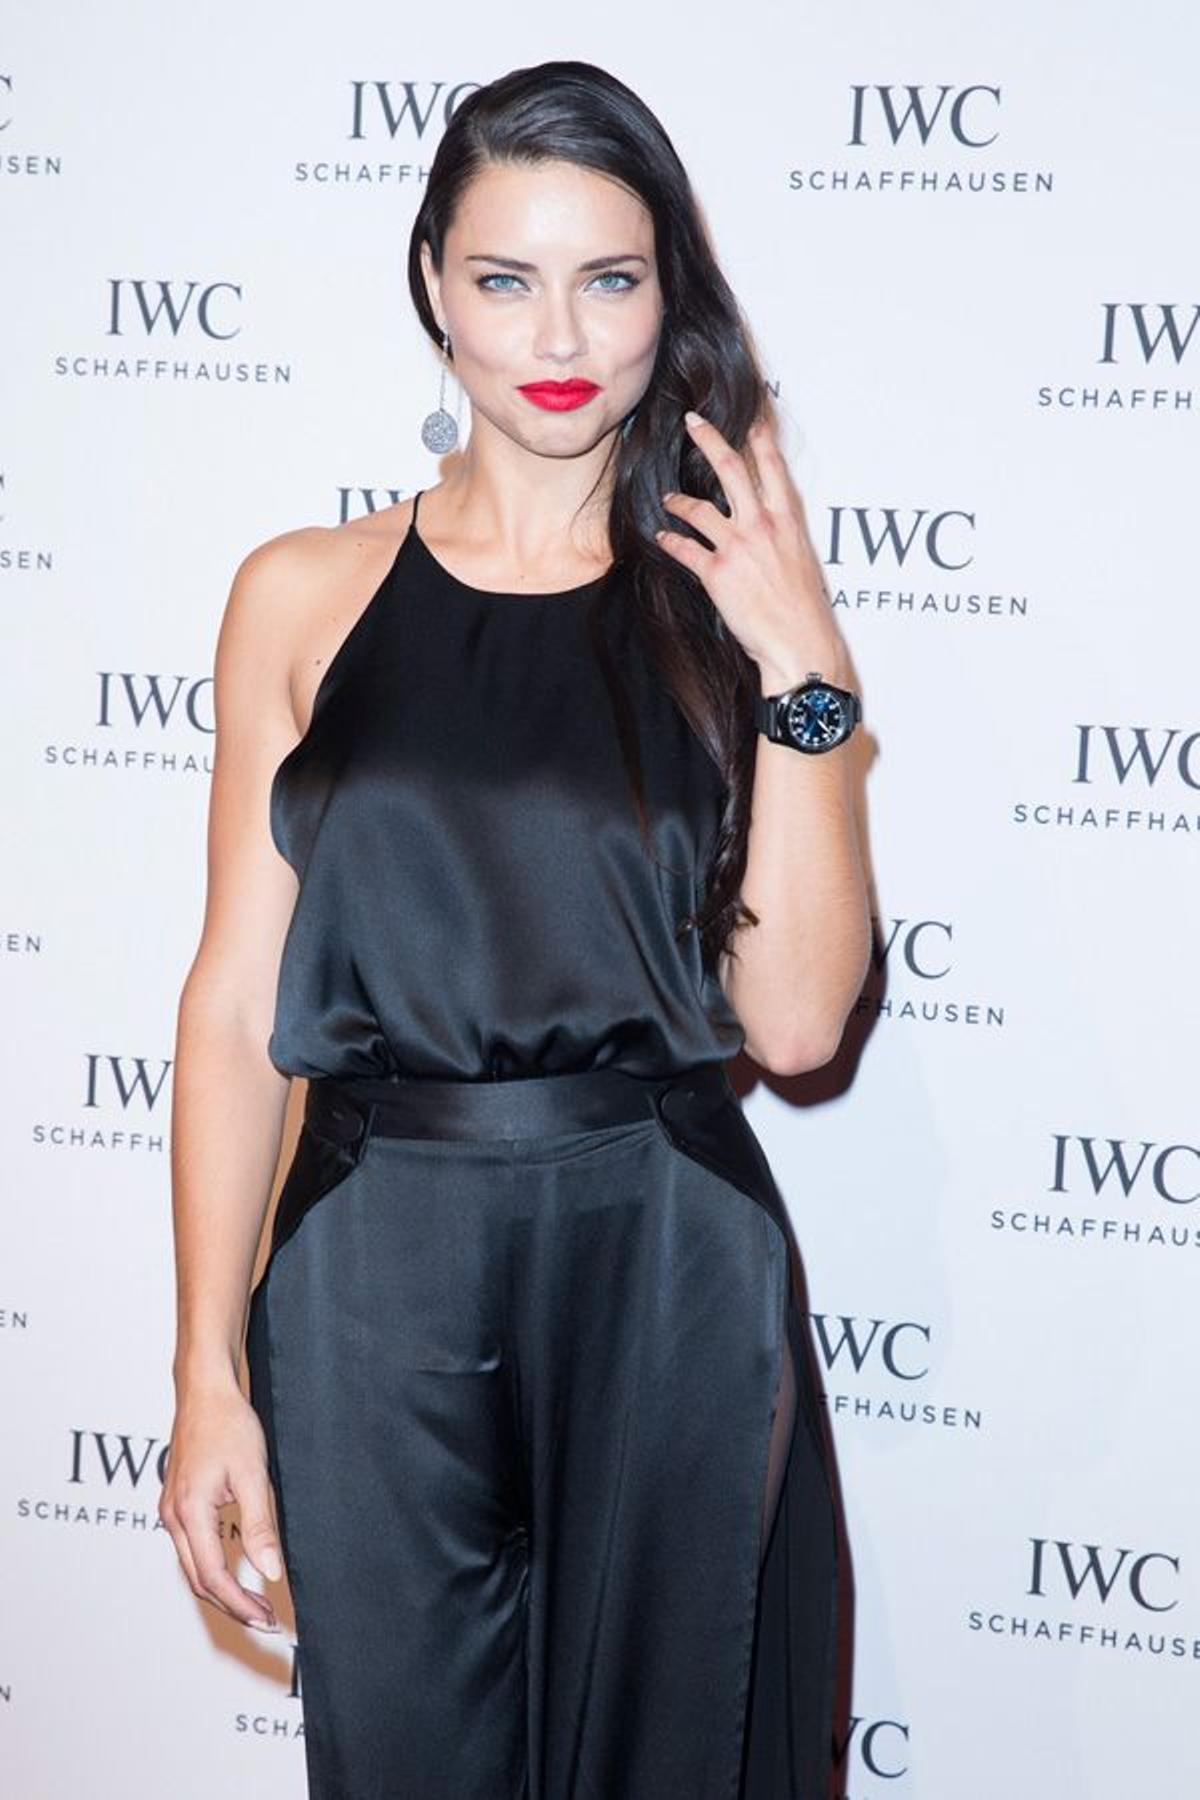 La belleza de Adriana Lima en la gala organizada por IWC